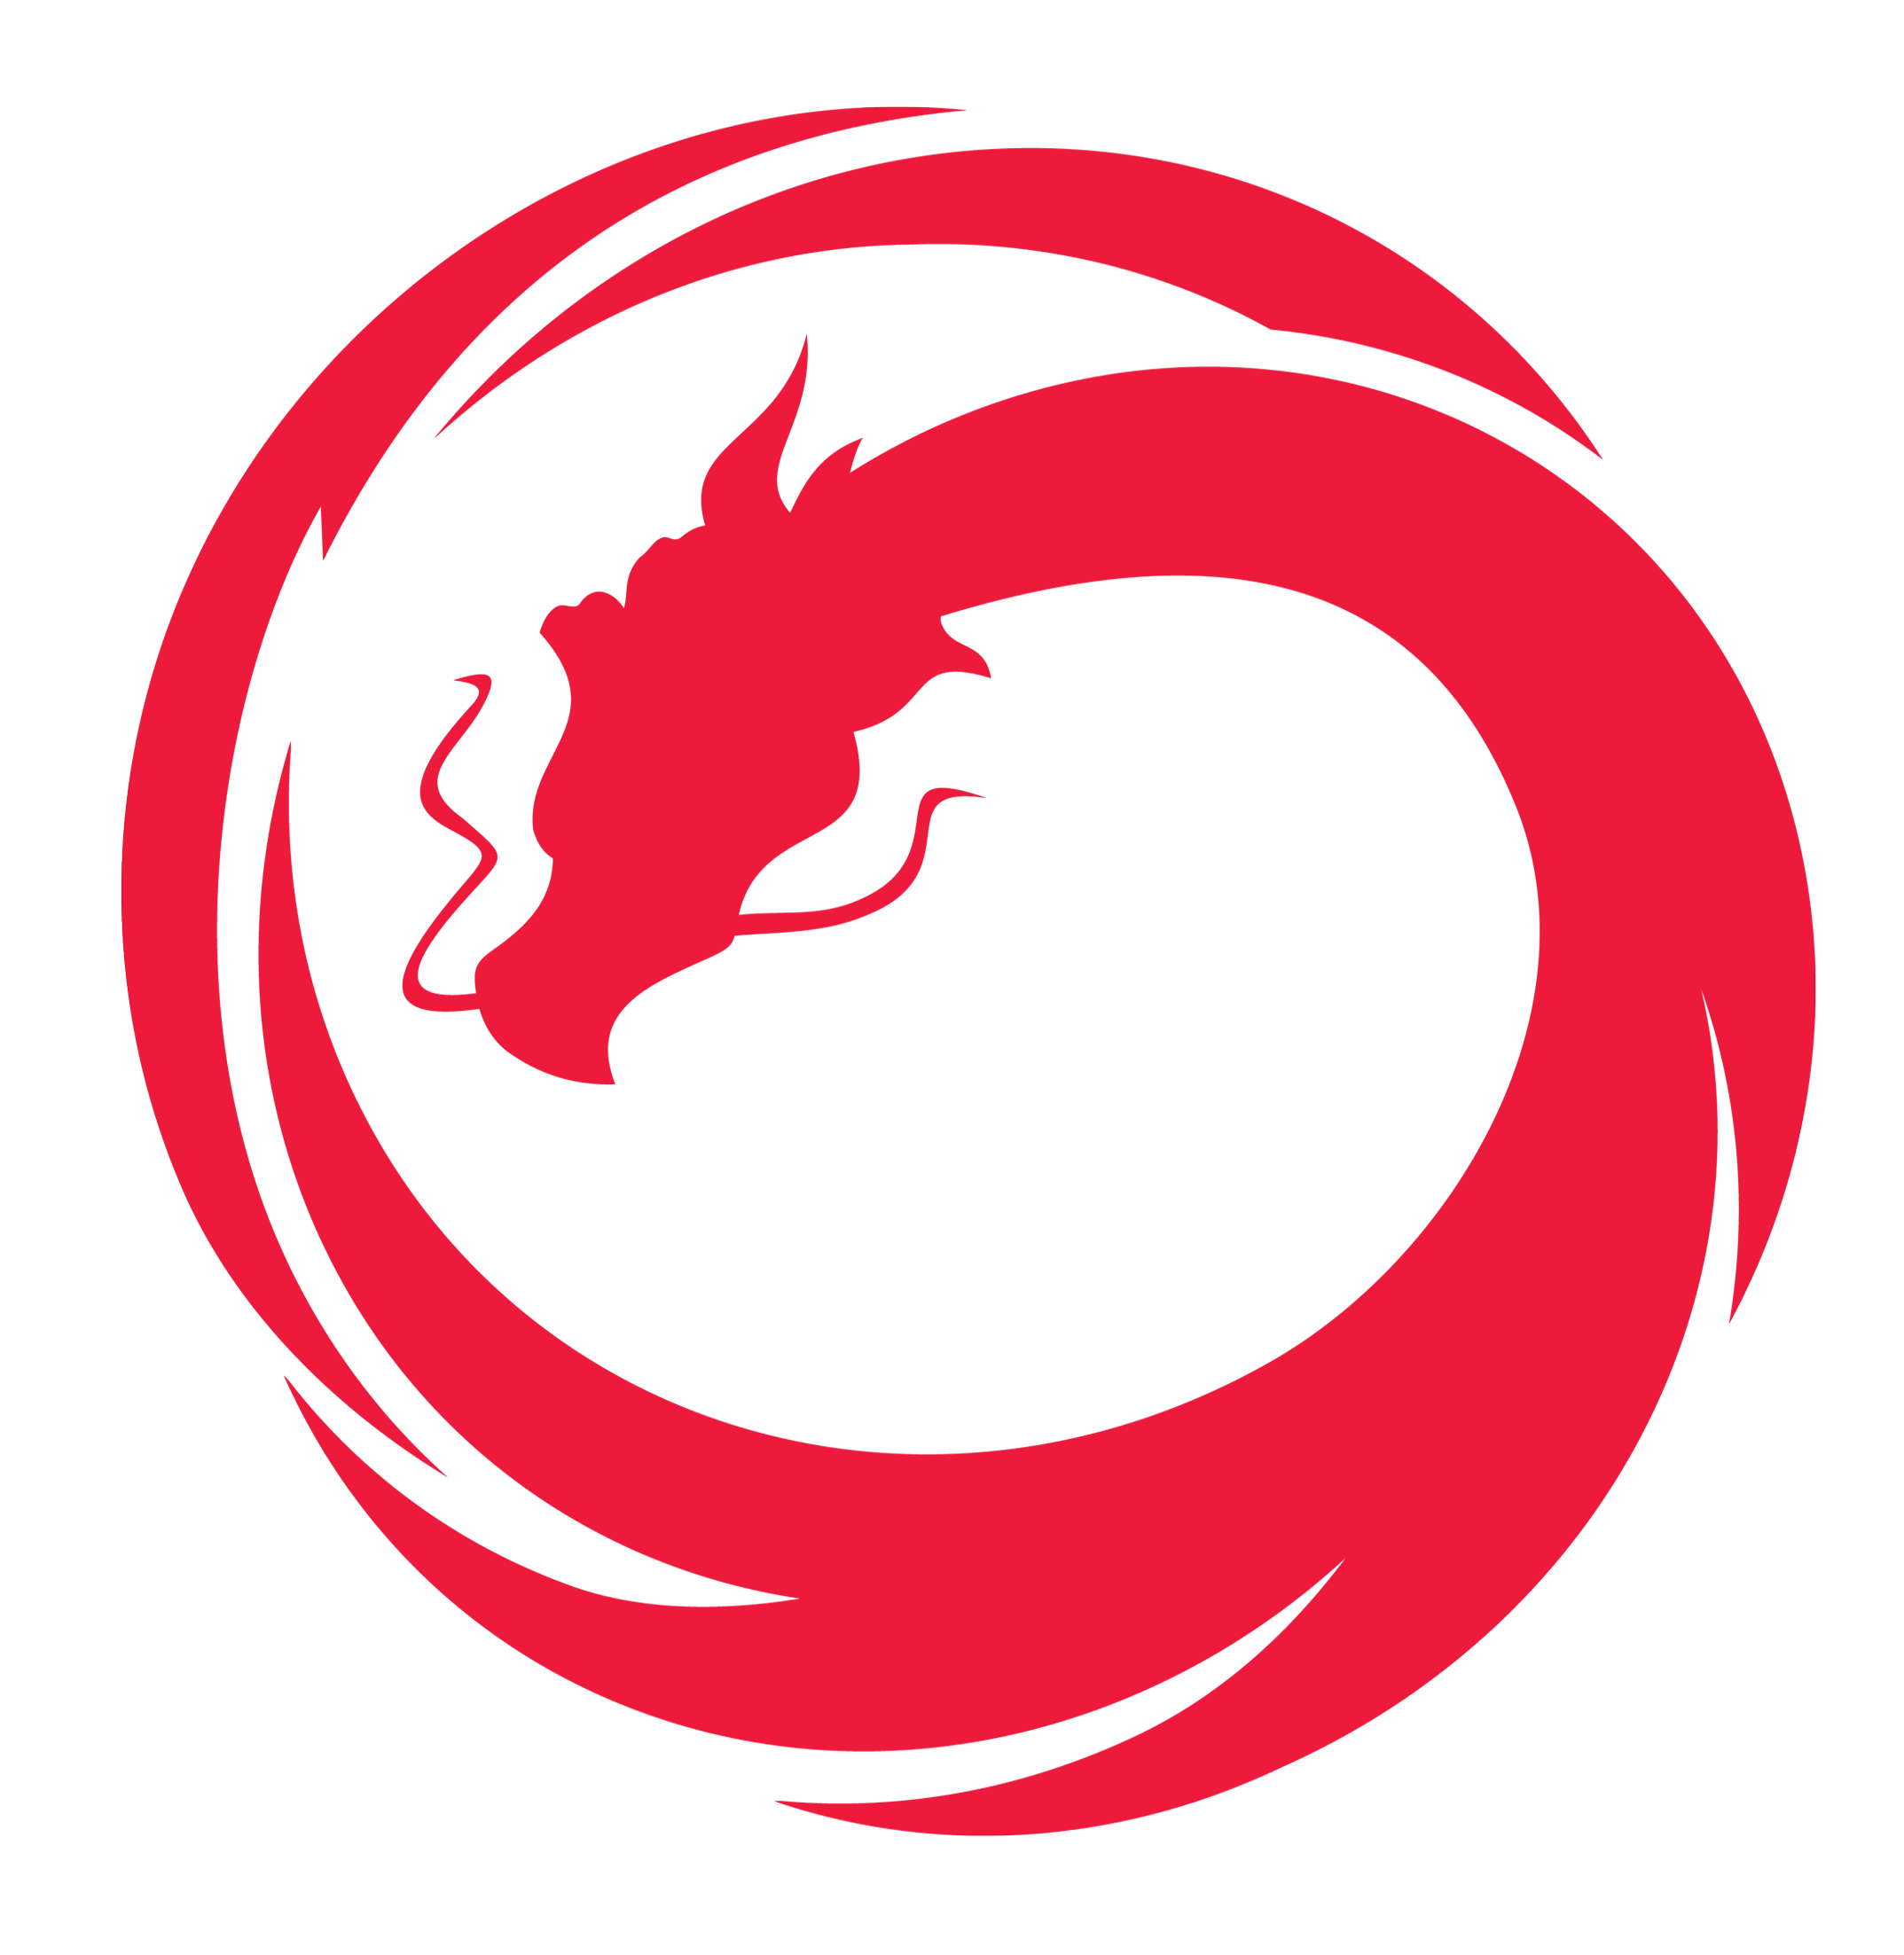 circleer dragon logo maker for youtube